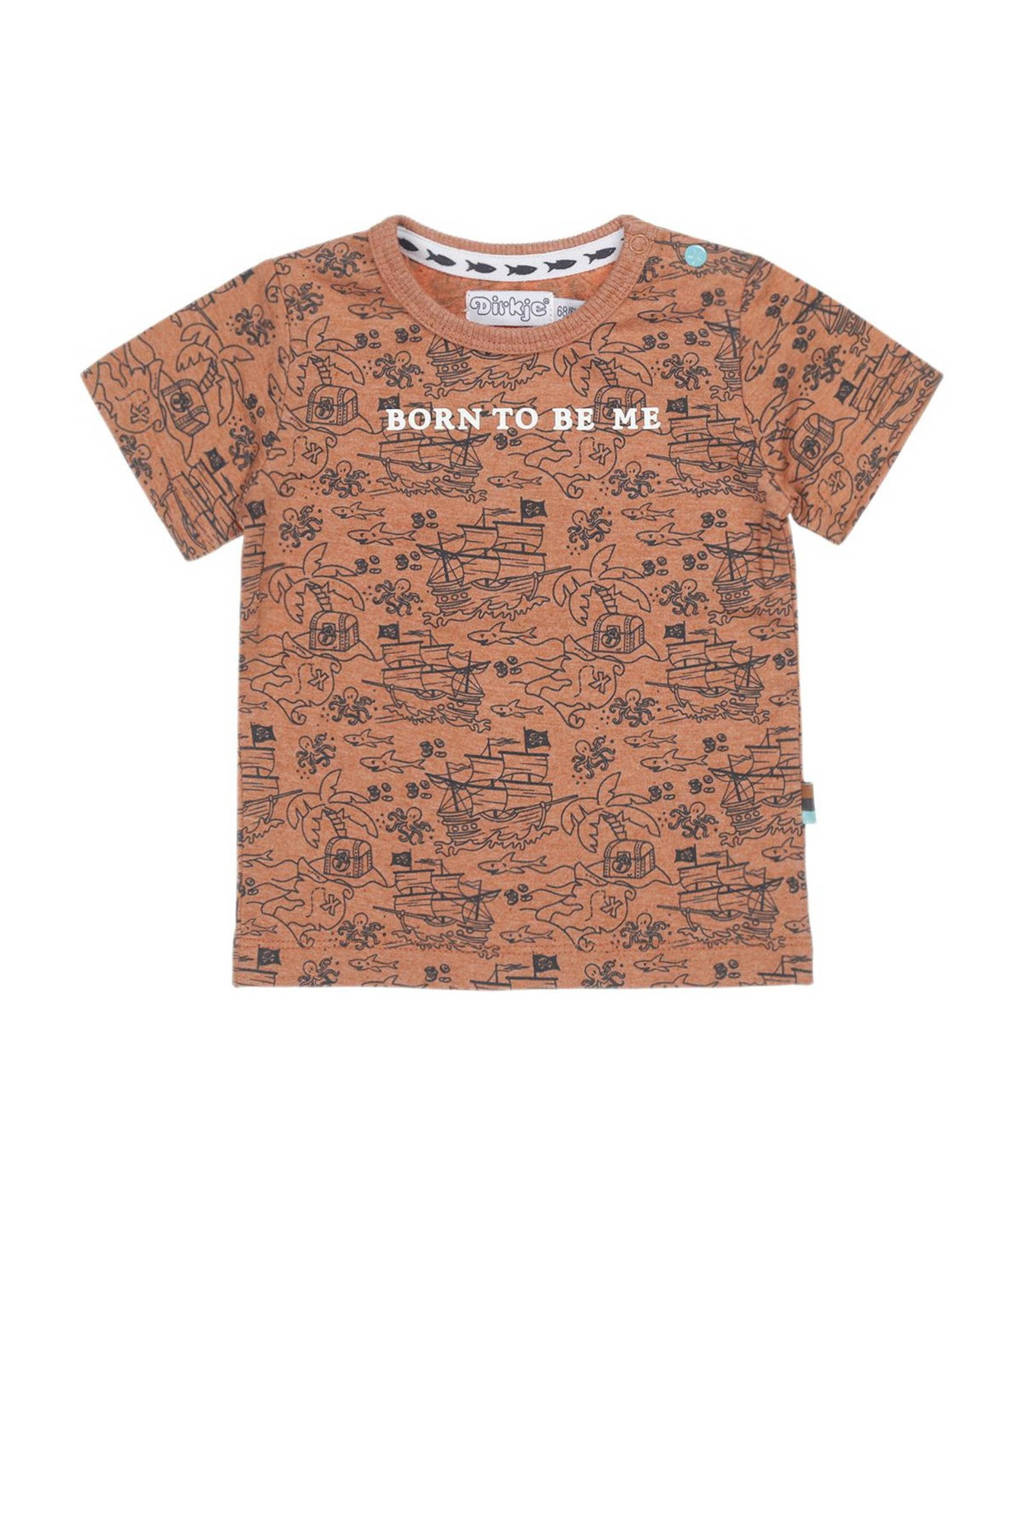 Dirkje T-shirt met all over print bruin